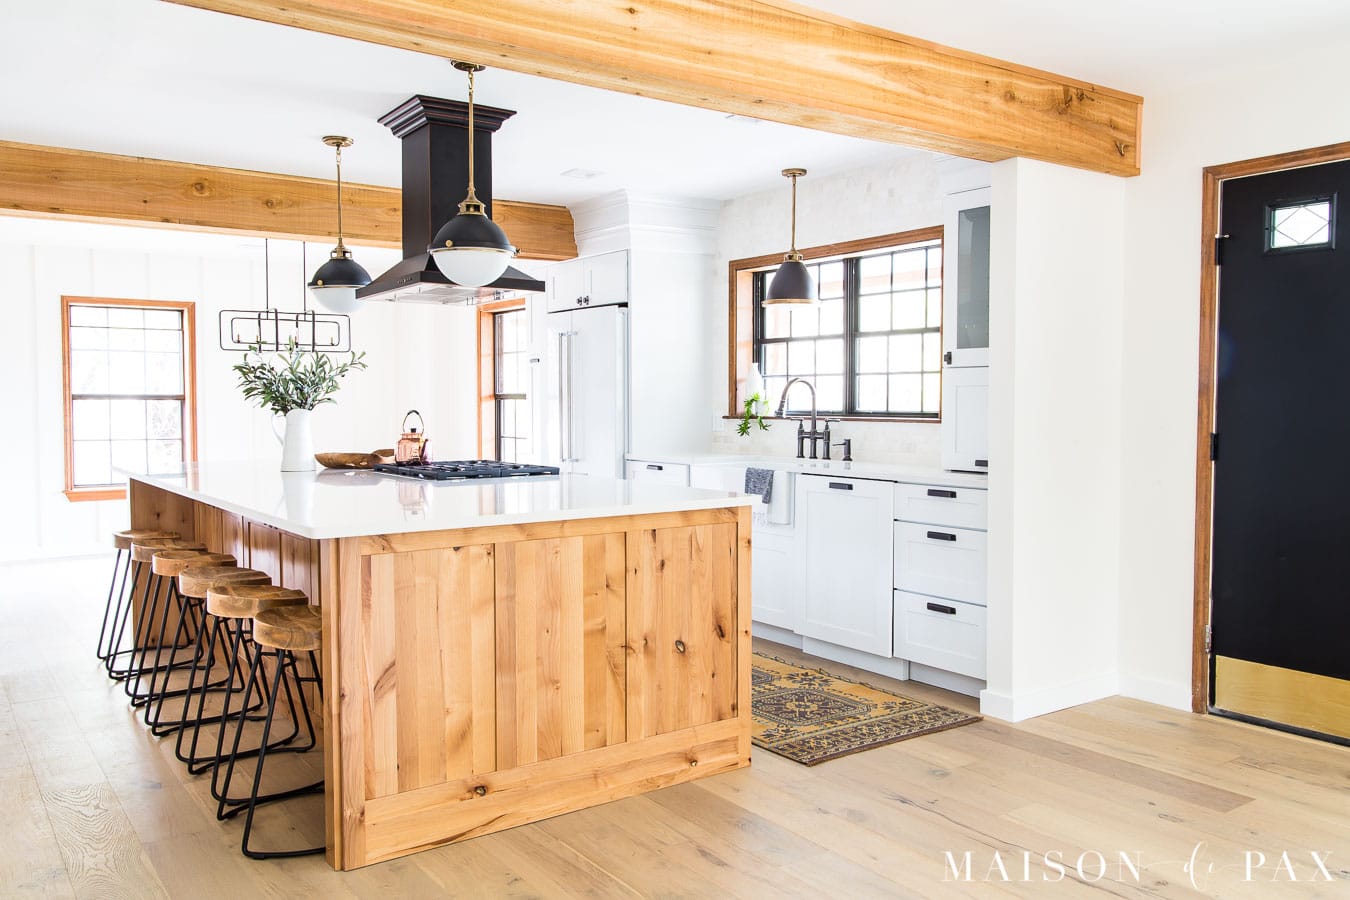 Rustic Modern Farmhouse Kitchen Reveal Maison De Pax